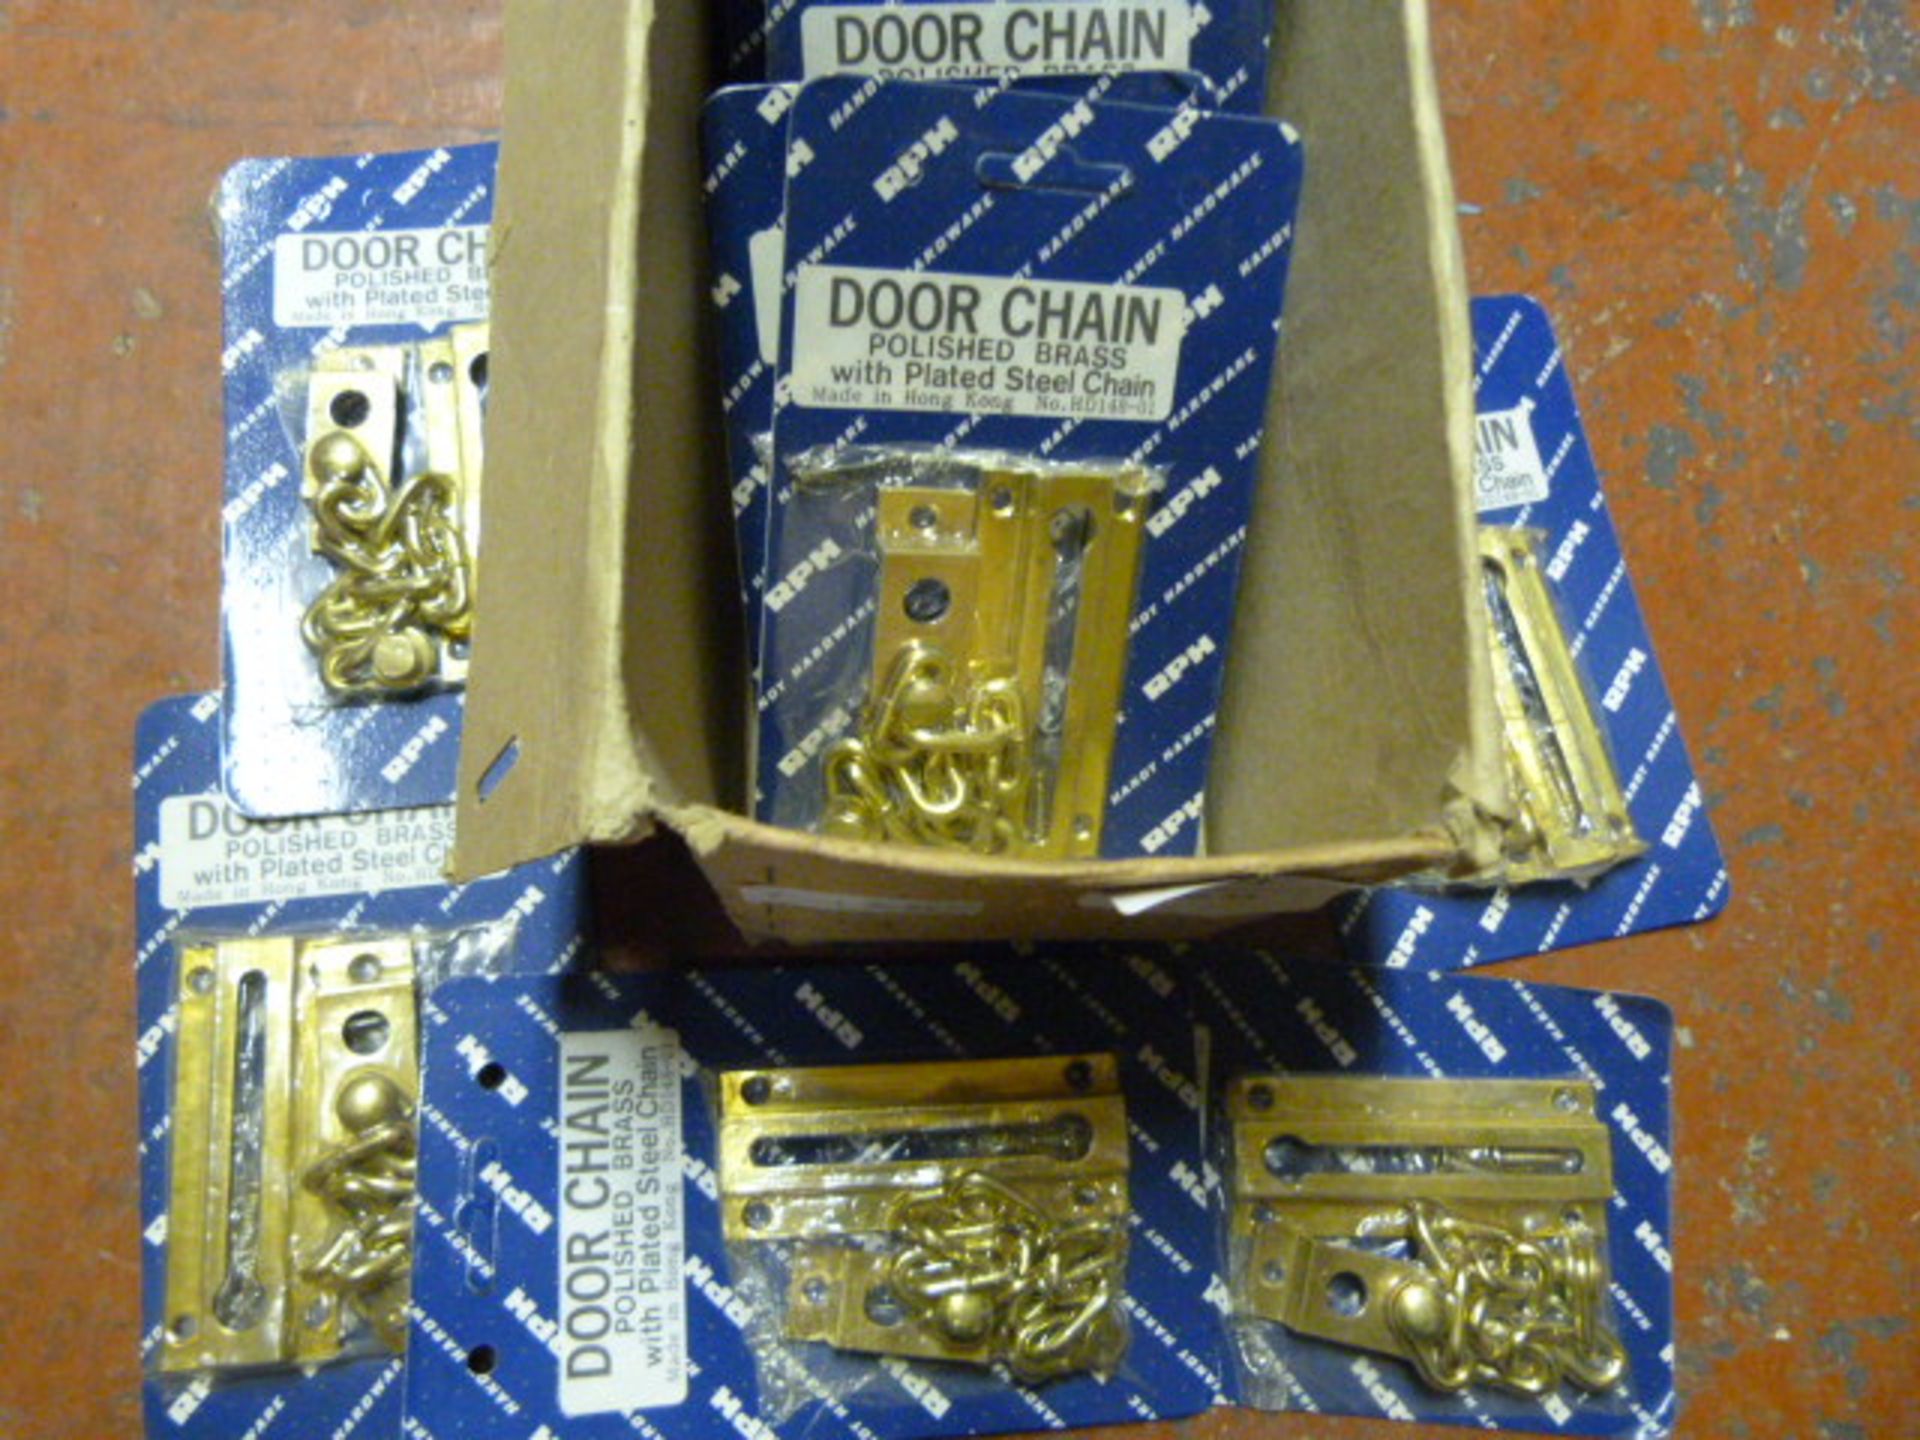 Box of Nine Brass Security Door Chains